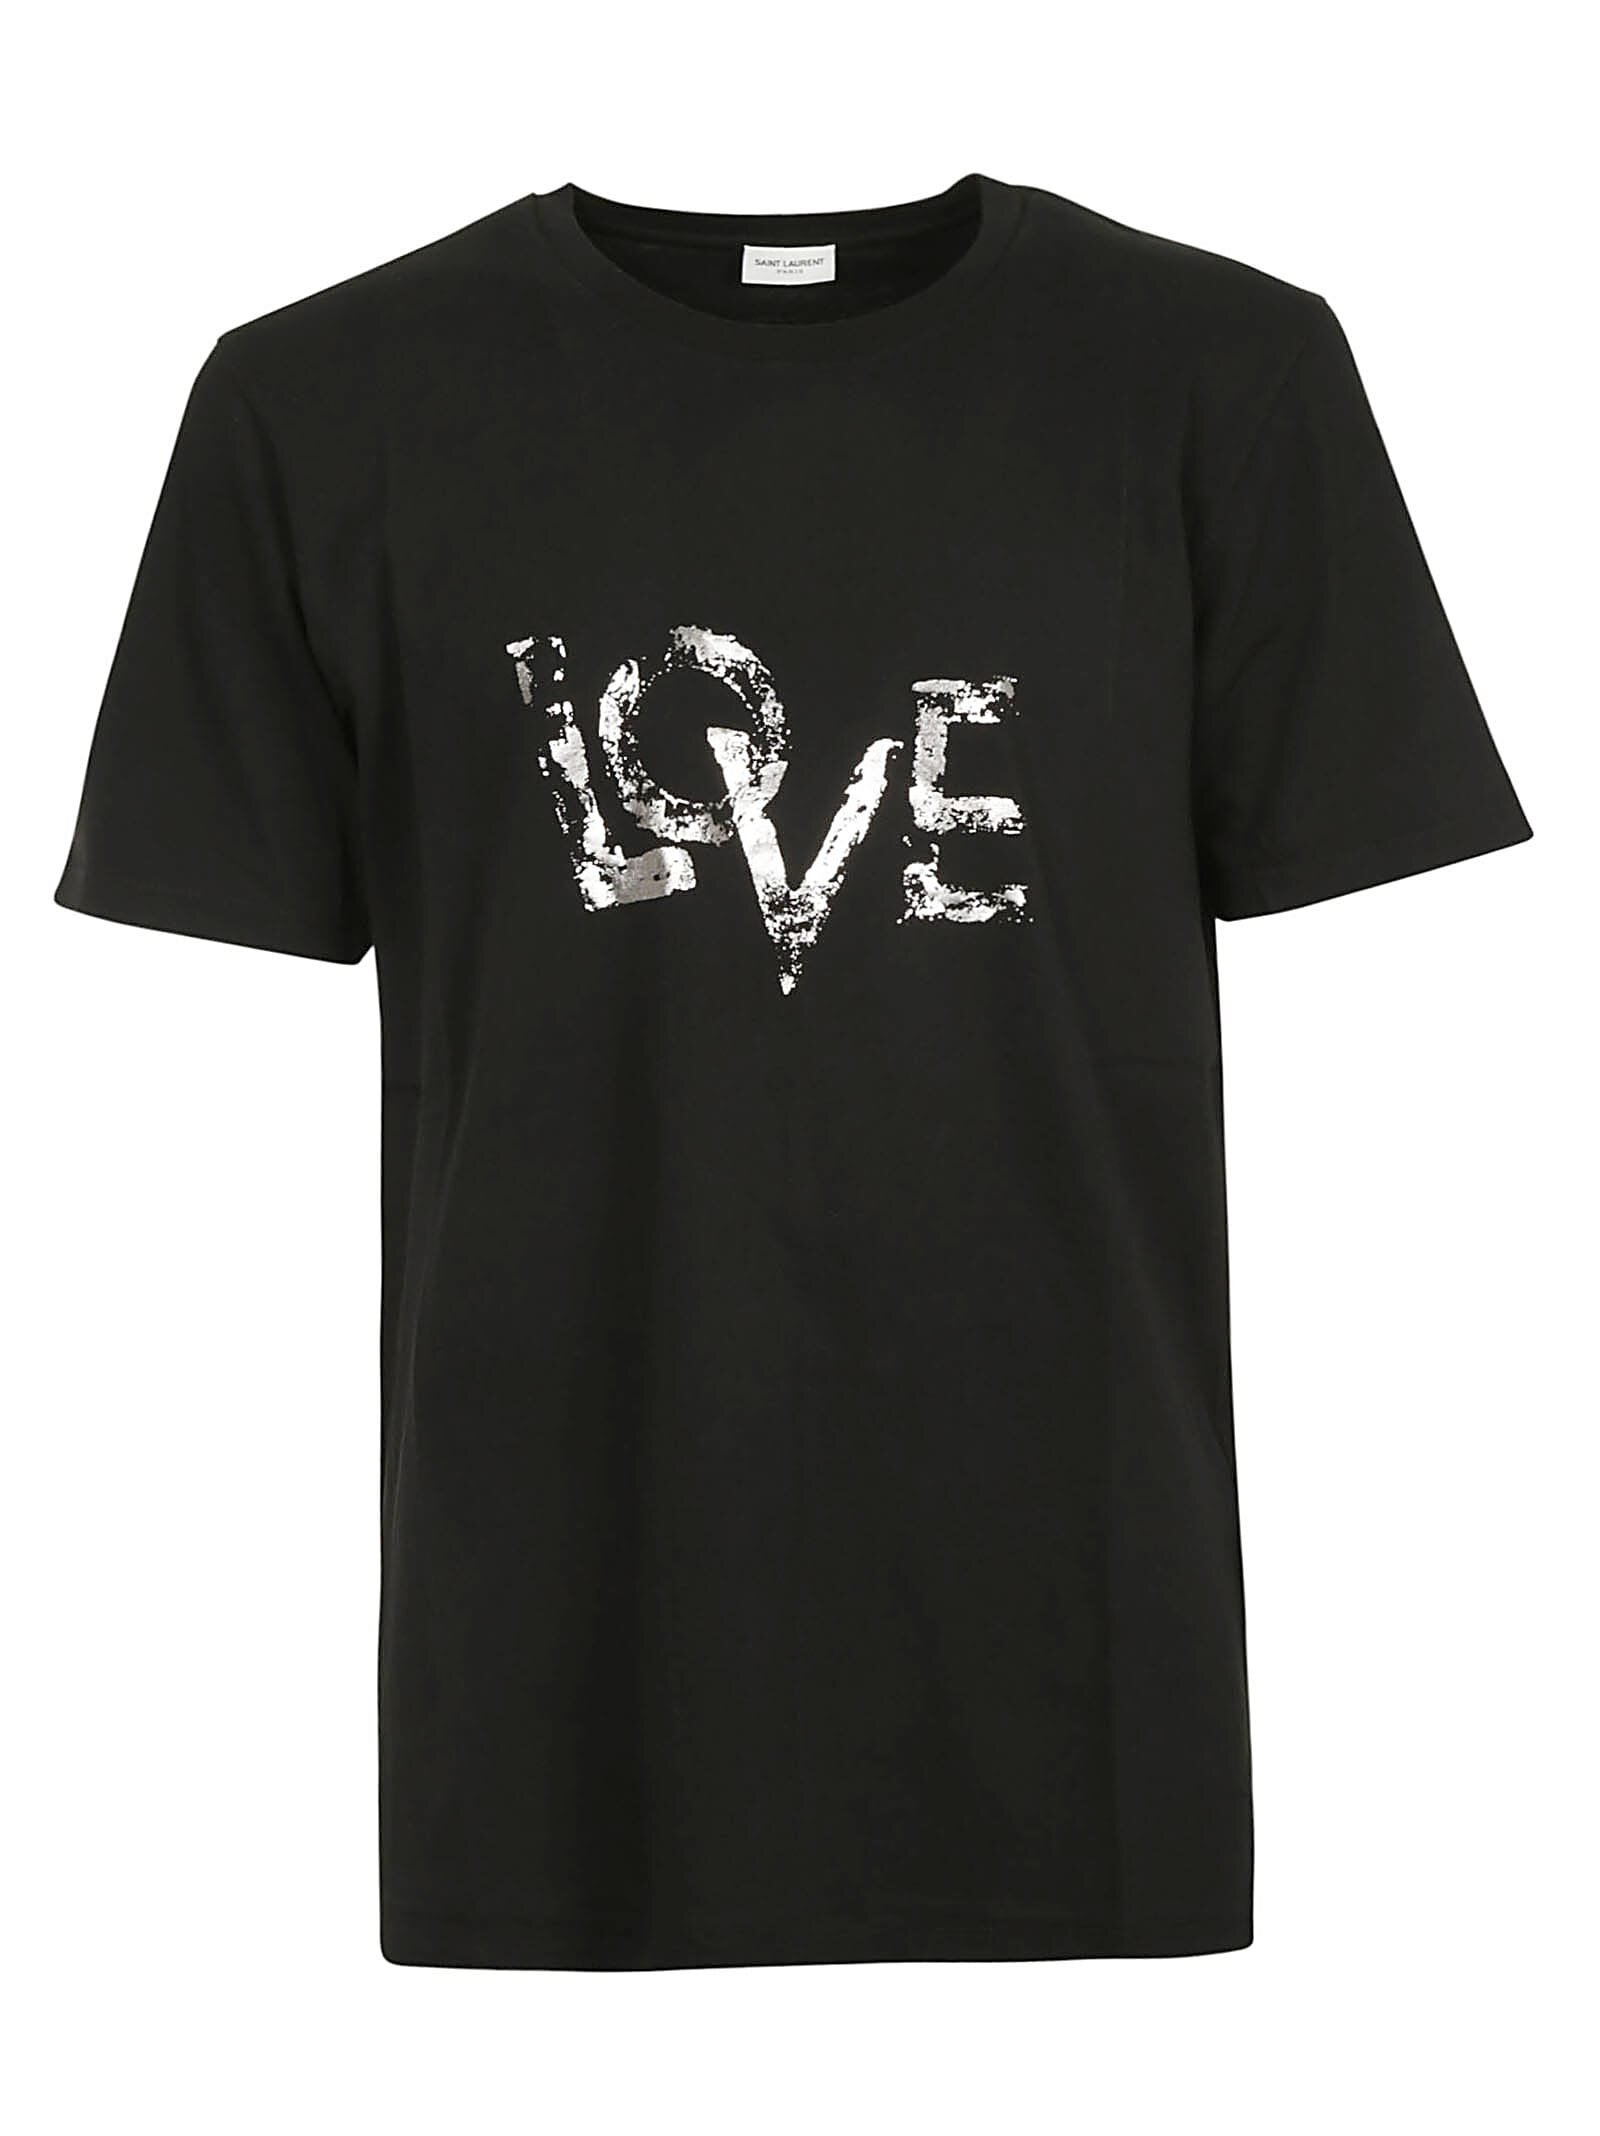 Saint Laurent Love T-Shirt in Black.jpg